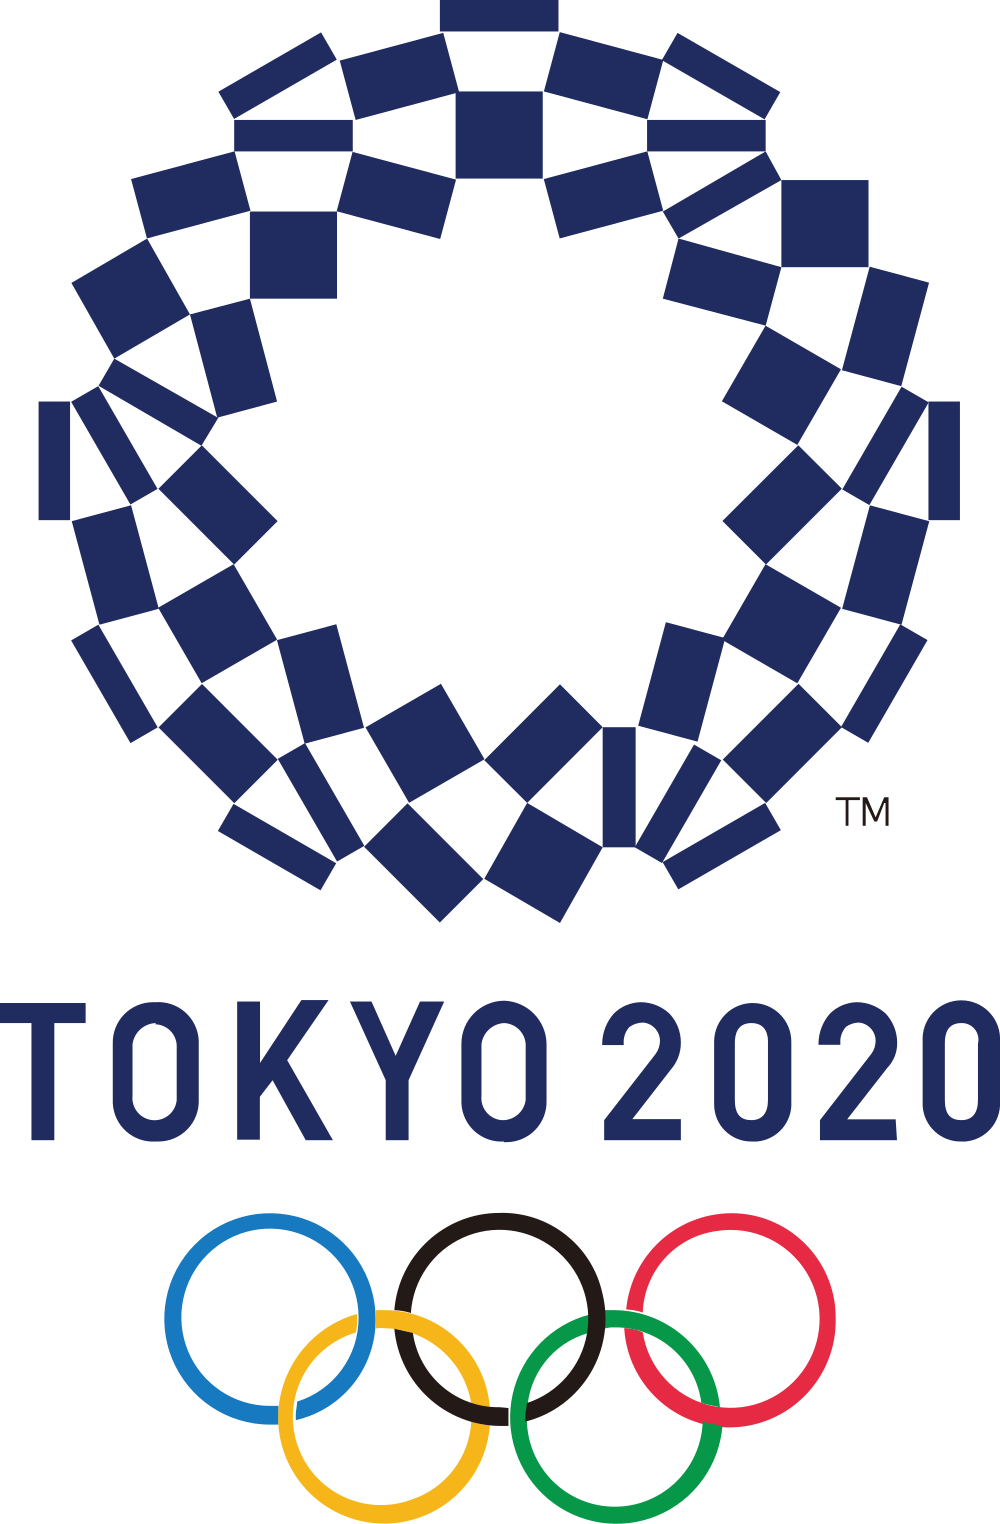 Tokyo Olympics 2020 logo png transparent